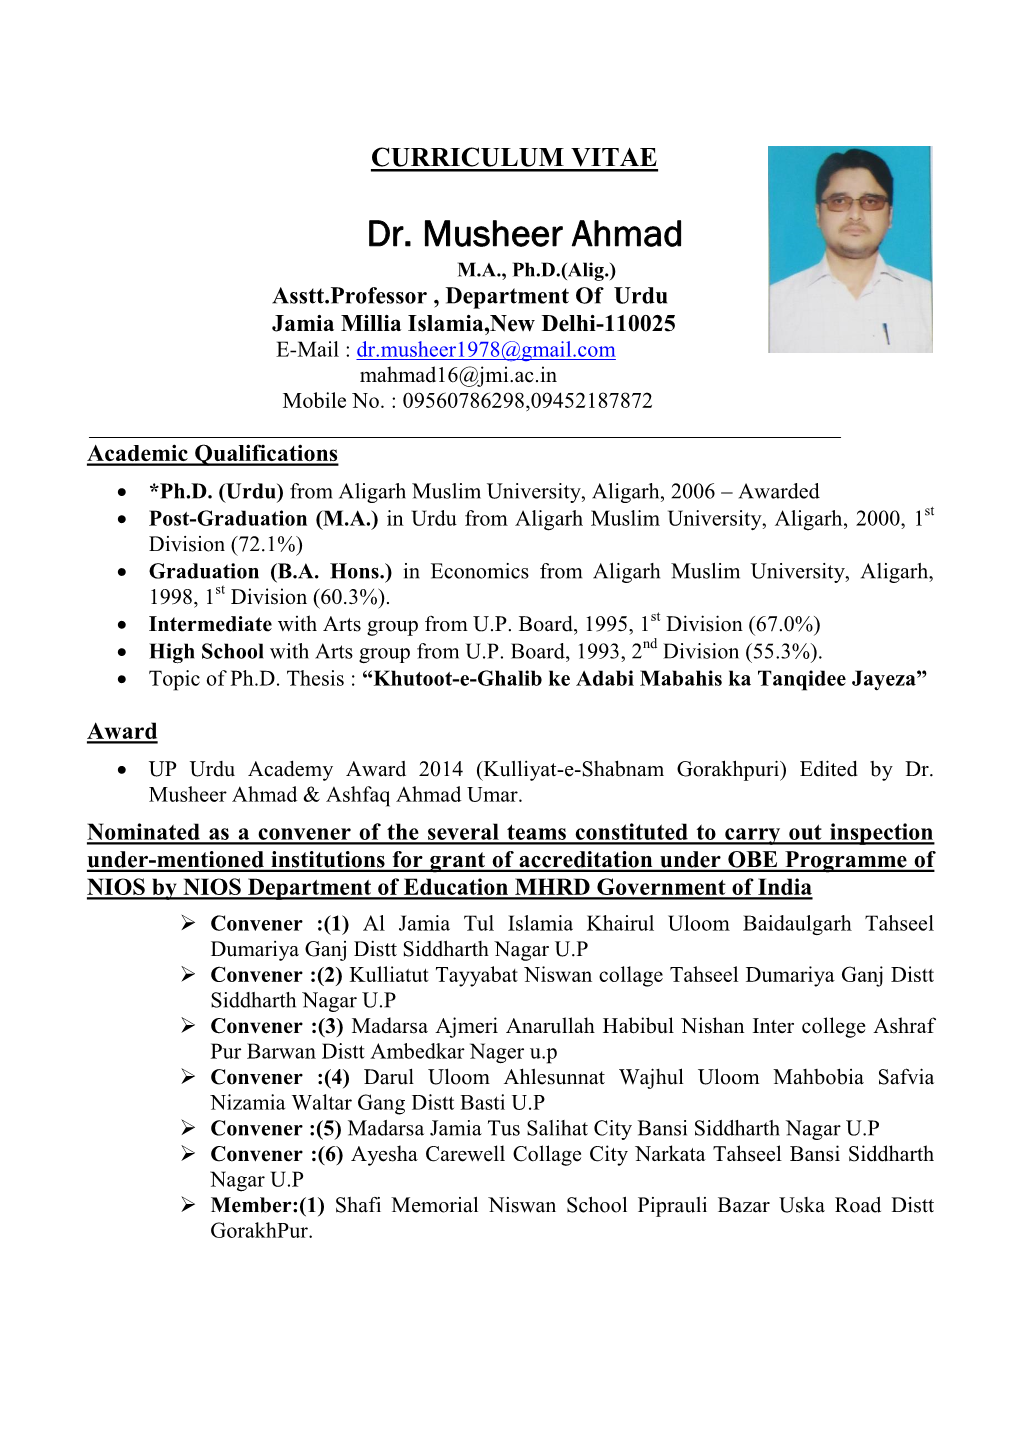 Dr. Musheer Ahmad